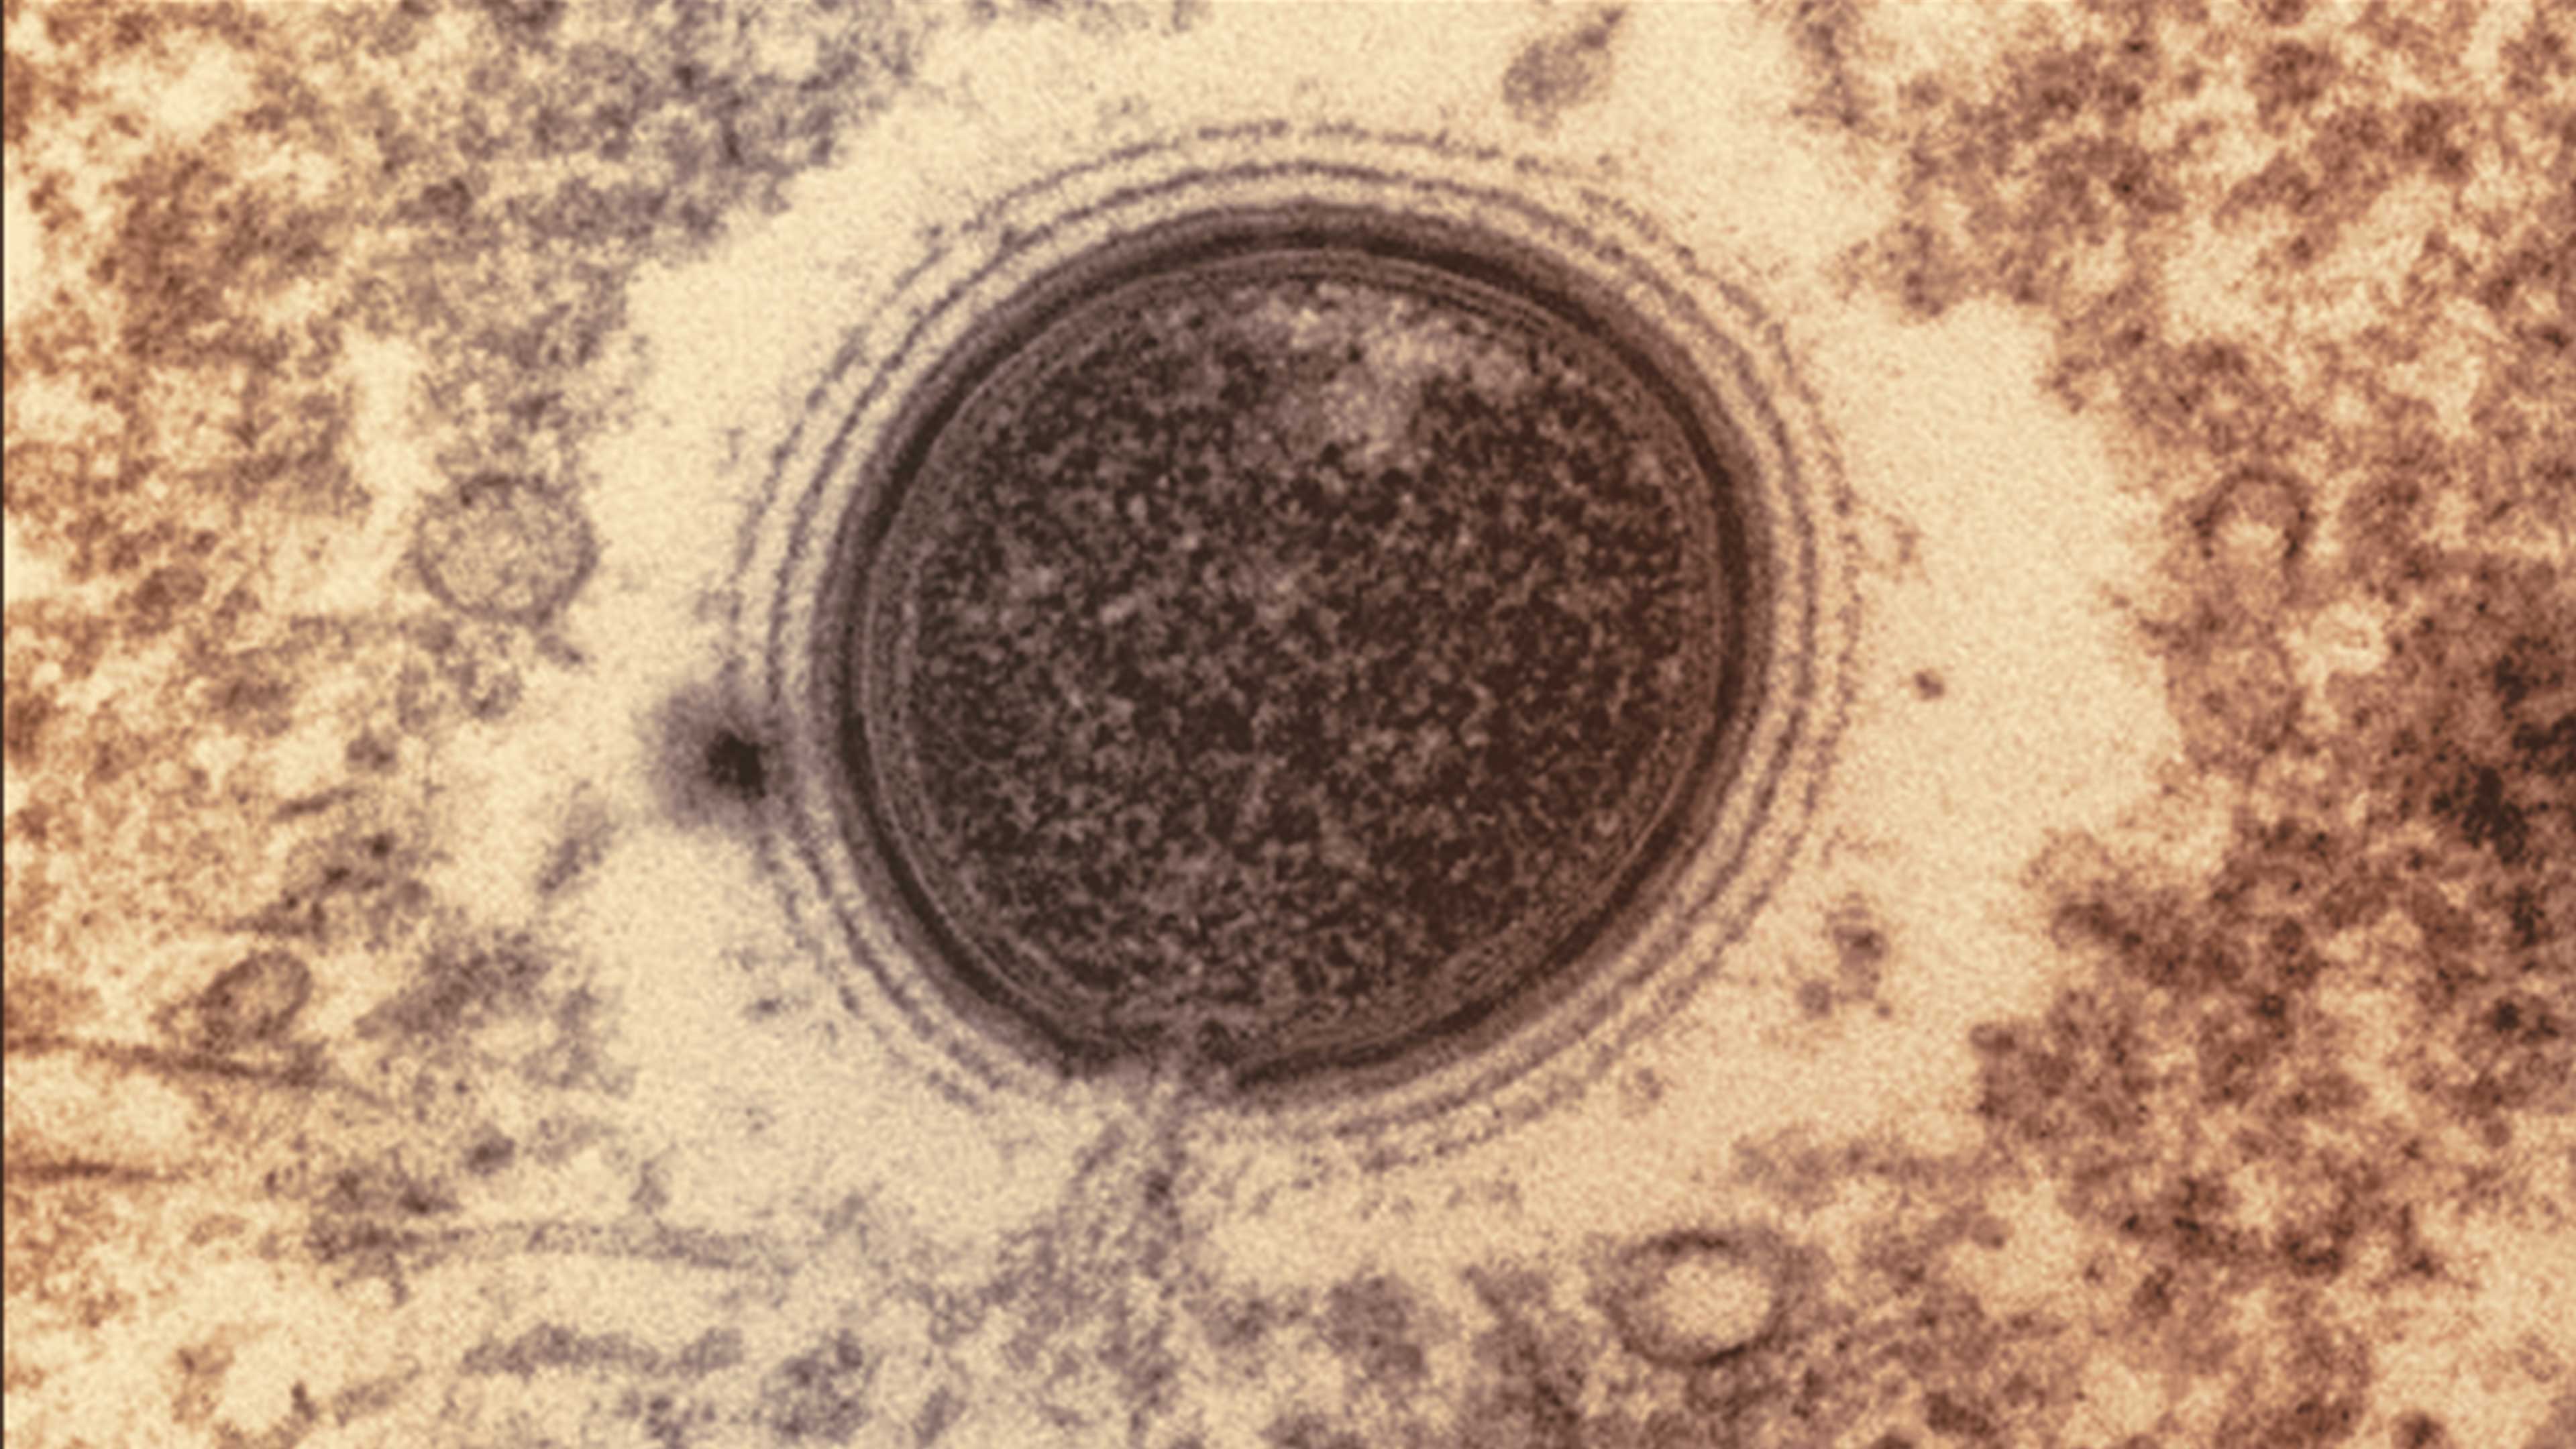 Virus de miles de años conservan la capacidad de infectar